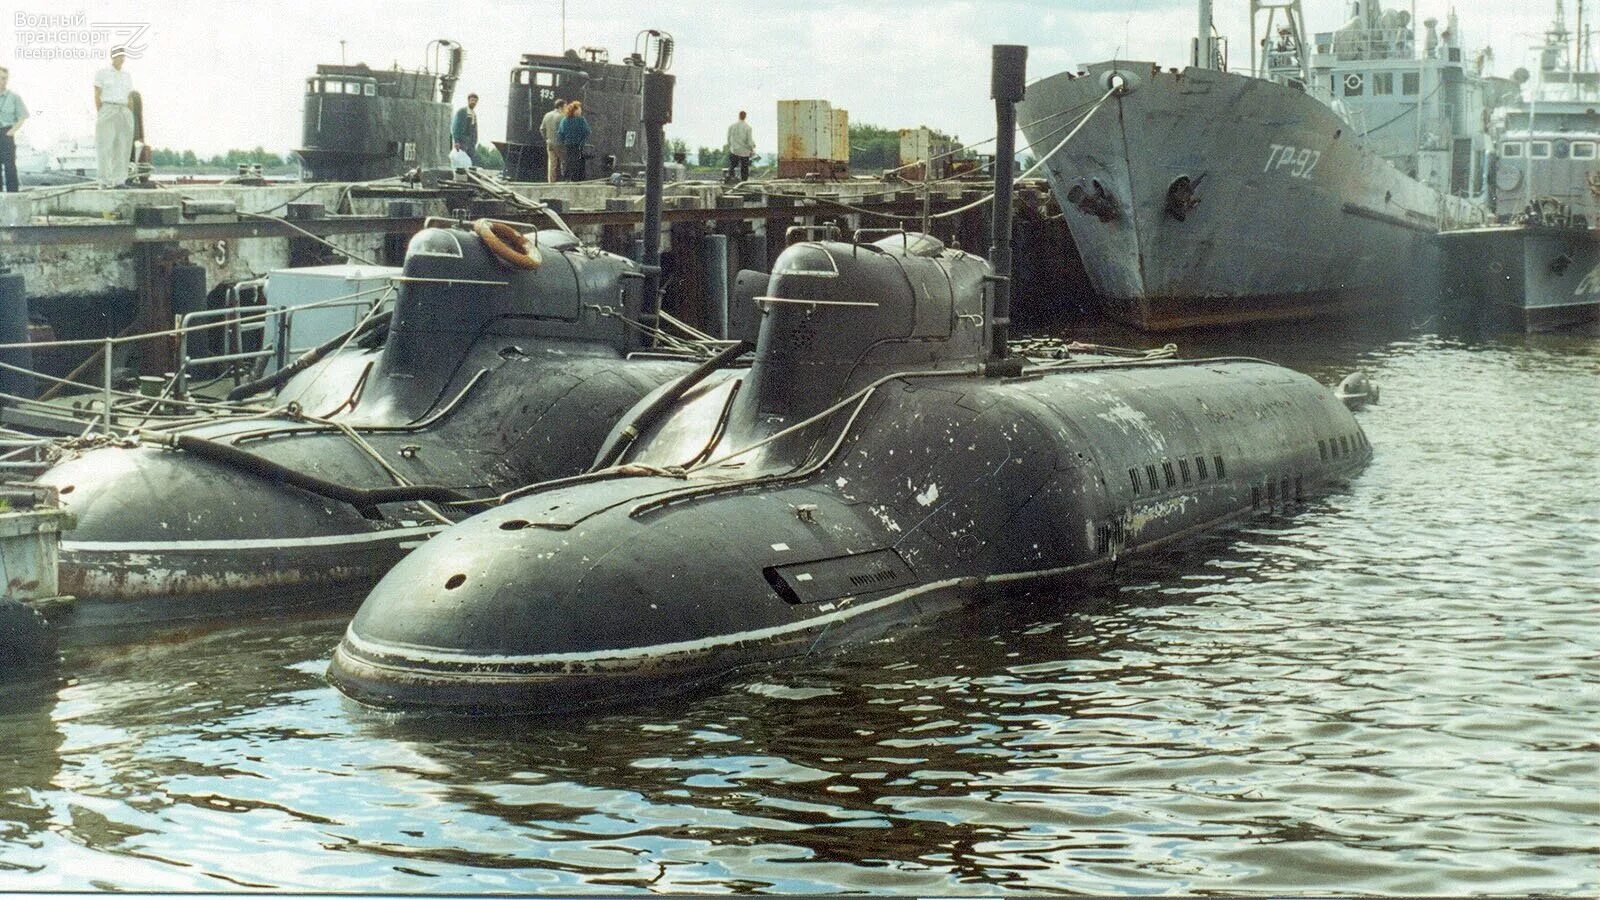 Пл вцы. Подводные лодки проекта 865 «Пиранья». Подводная лодка Пиранья проект 865. Подводная лодка Малютка 1941-1945. Сверхмалой подводной лодки проекта 865 «Пиранья».